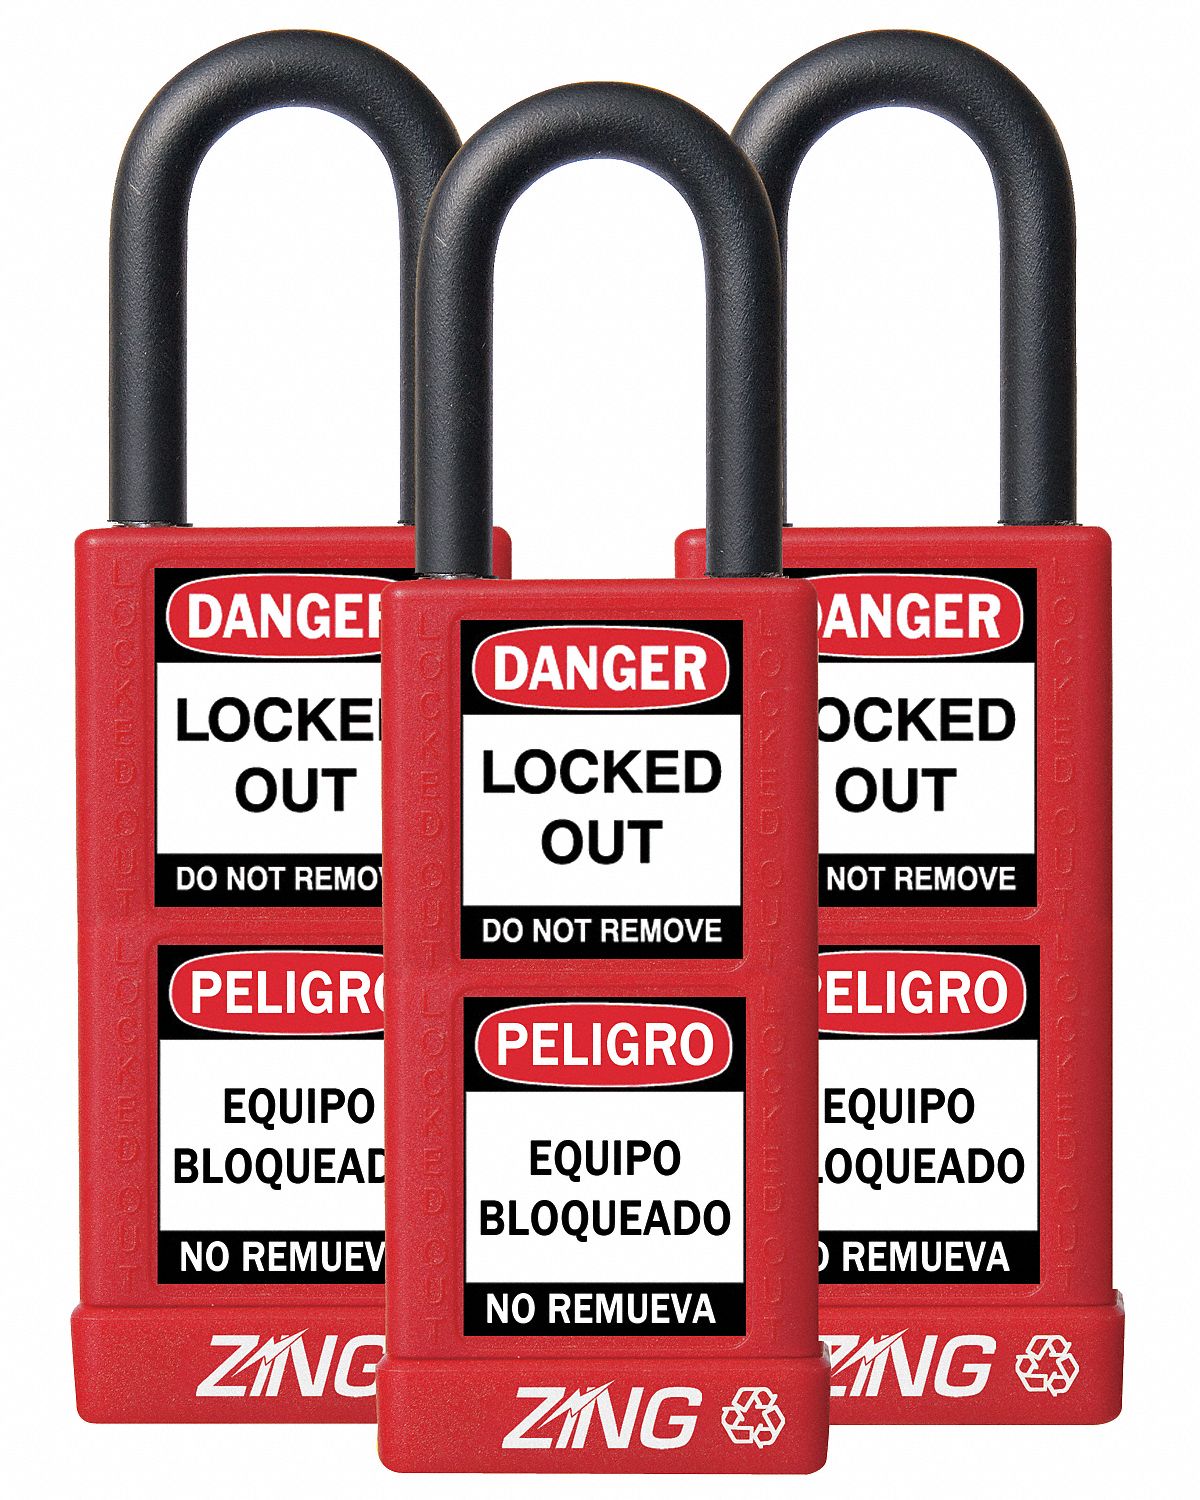 BRADY Candado de Seguridad Rojo con 1 llave - Candados con Mecanismo de  Bloqueo - 2ZYM6